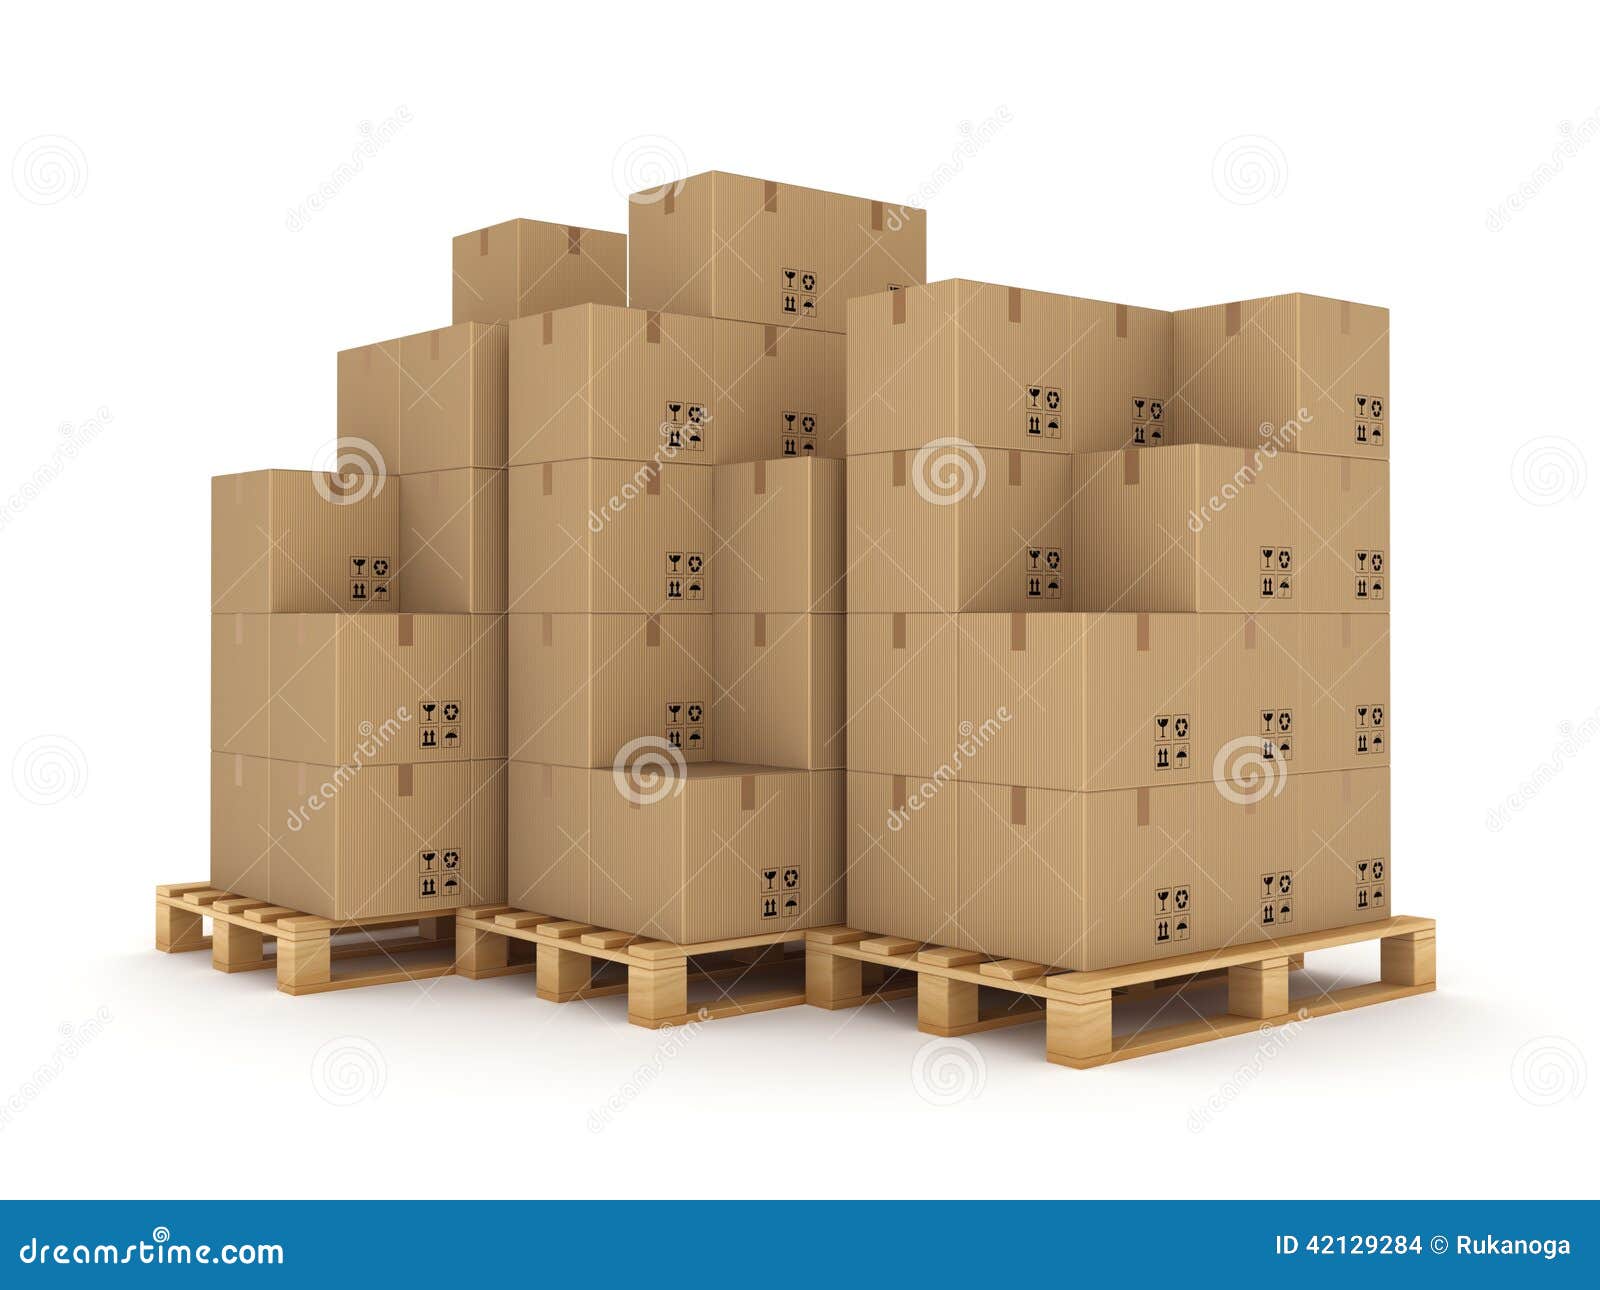 Сколько коробок на китайском. Коробки со шмелями на палете. Сколько коробов 60 40 40 помещается на палете. Сколько коробок можно поставить на паллет Озон.